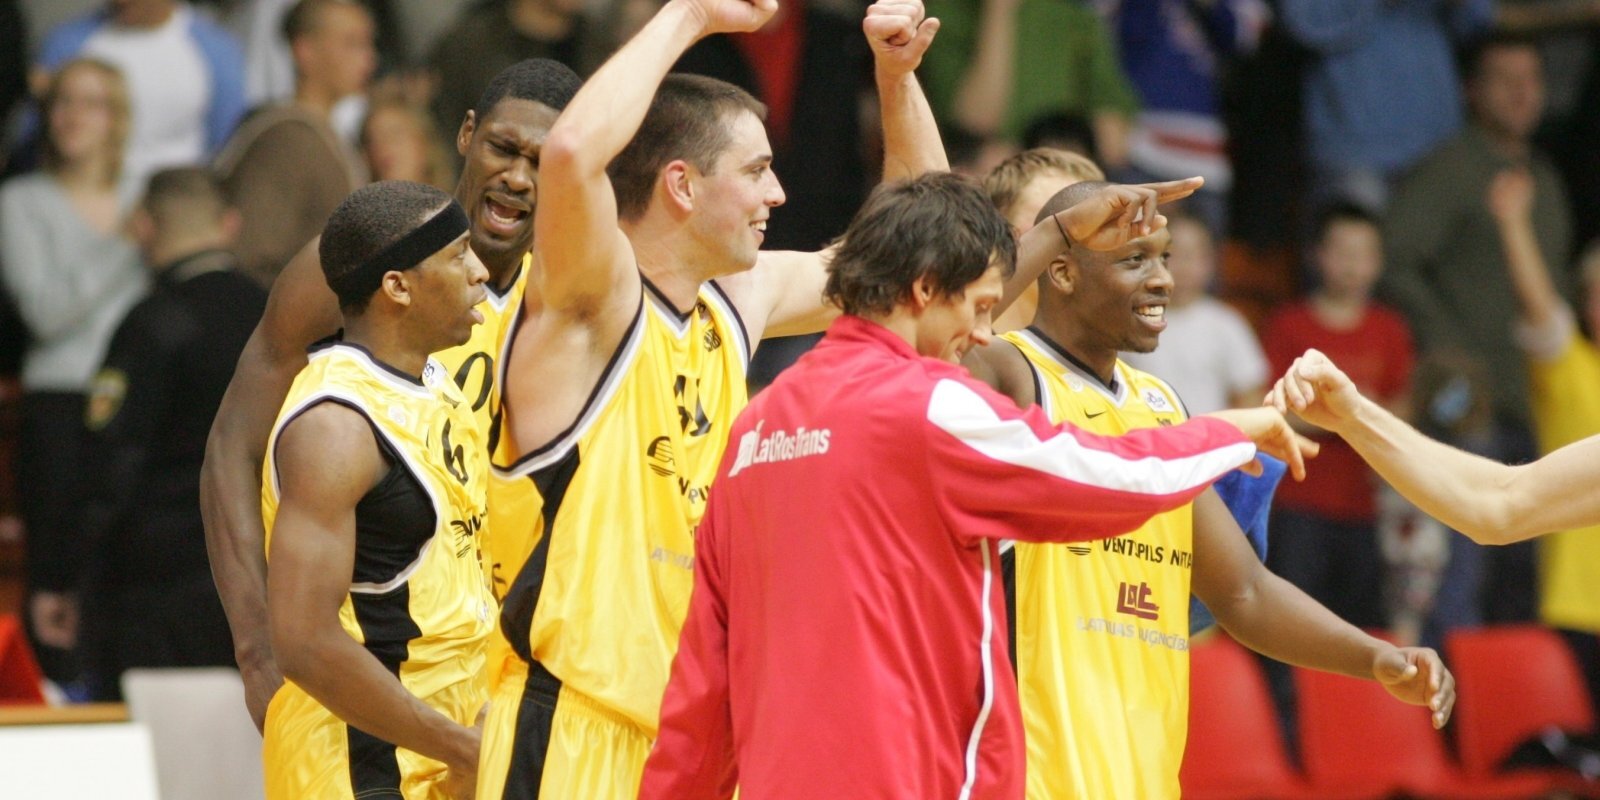 Izcilās komandas: 'Ventspils' basketbolisti piesaka pretenzijas uz ULEB kausu